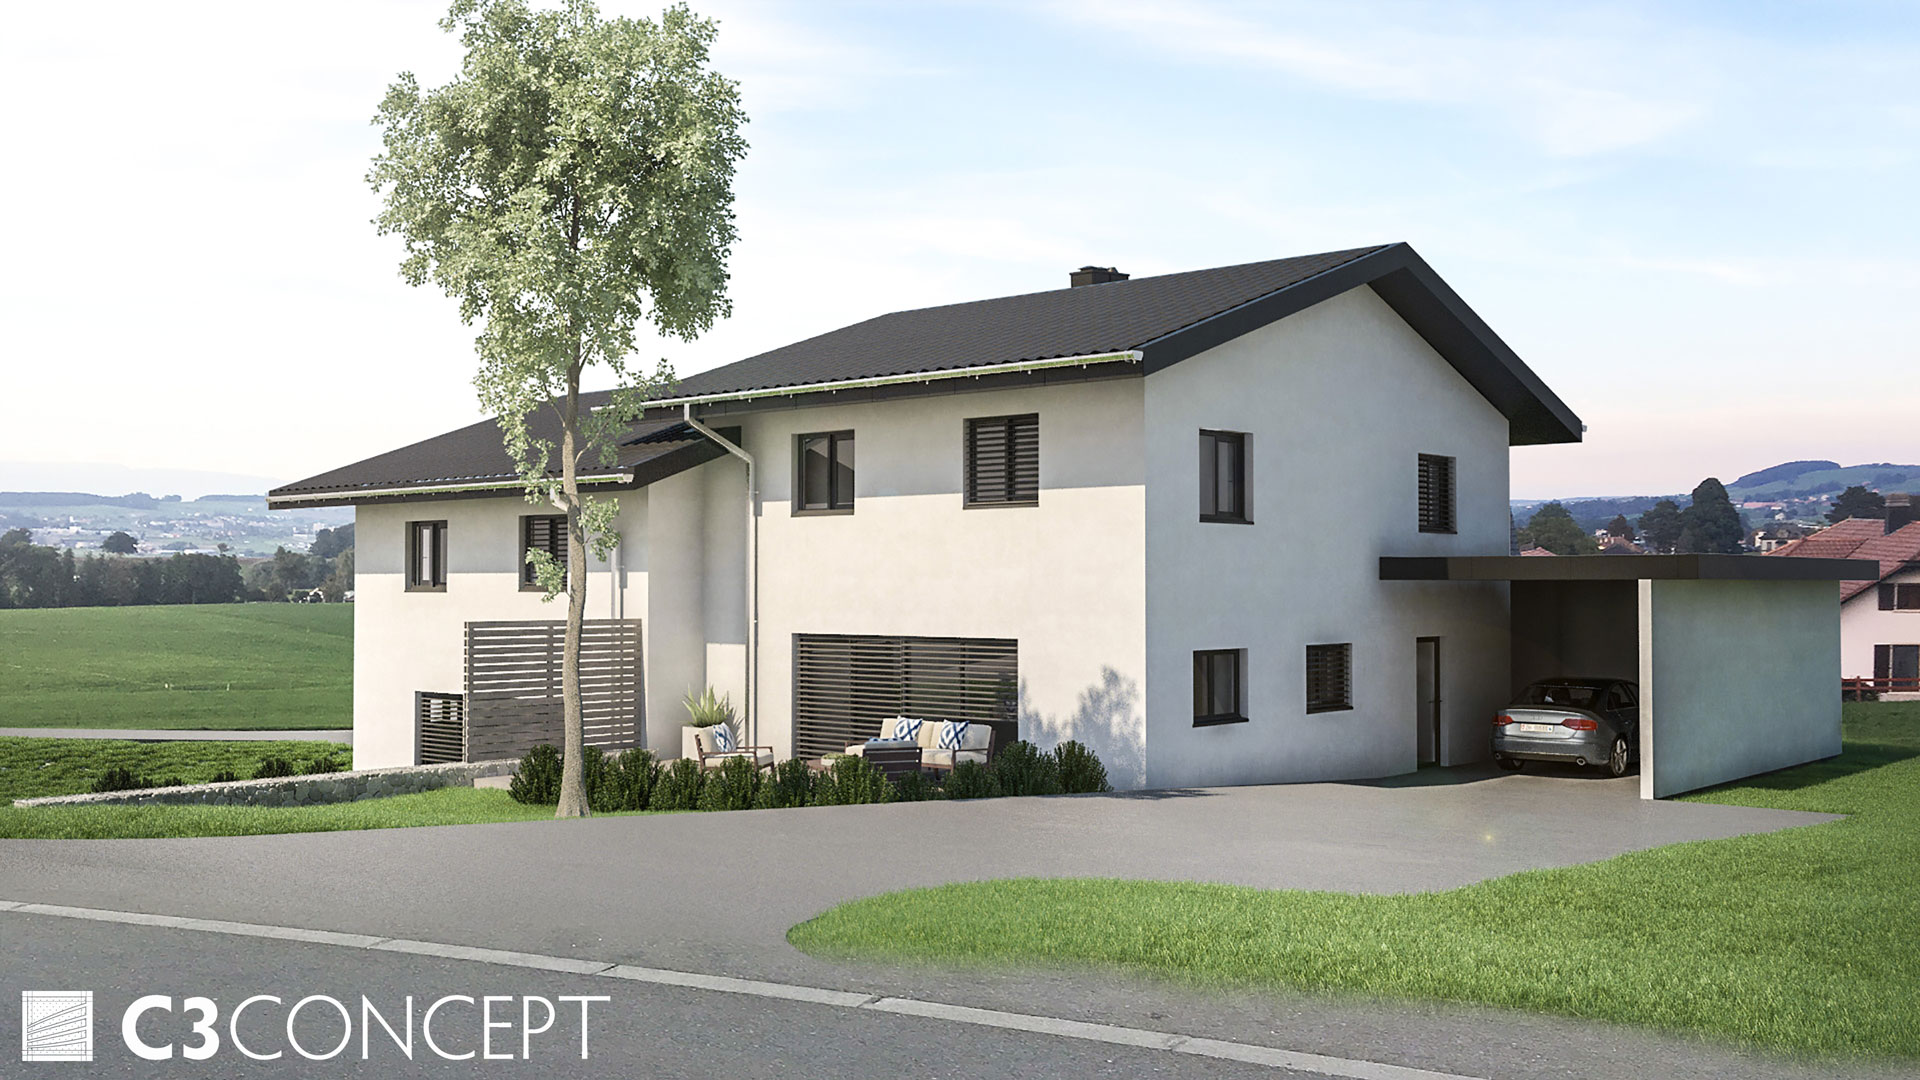 C3 Concept, visualisation 3D à Bulle. villas jumelées Vuisternens extérieur